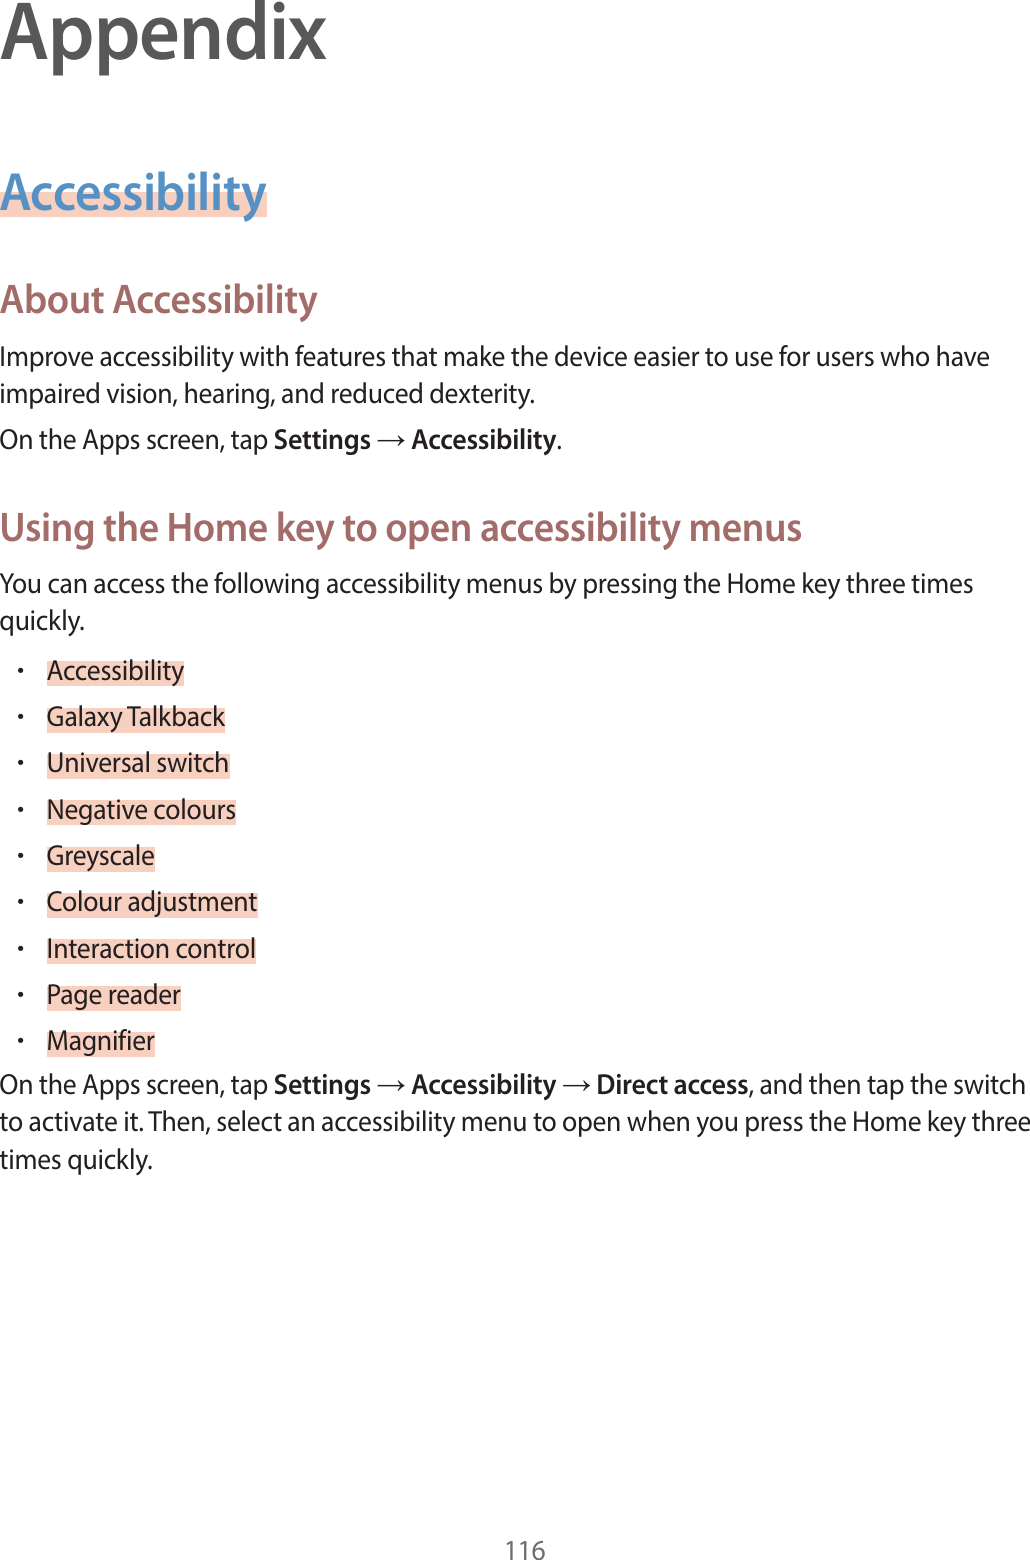 AppendixAccessibilityAbout Accessibility*NQSPWFBDDFTTJCJMJUZXJUIGFBUVSFTUIBUNBLFUIFEFWJDFFBTJFSUPVTFGPSVTFSTXIPIBWFJNQBJSFEWJTJPOIFBSJOHBOESFEVDFEEFYUFSJUZ0OUIF&quot;QQTTDSFFOUBQSettingsĺAccessibilityUsing the Home key to open accessibility menus:PVDBOBDDFTTUIFGPMMPXJOHBDDFTTJCJMJUZNFOVTCZQSFTTJOHUIF)PNFLFZUISFFUJNFTRVJDLMZr&quot;DDFTTJCJMJUZr(BMBYZ5BMLCBDLr6OJWFSTBMTXJUDIr/FHBUJWFDPMPVSTr(SFZTDBMFr$PMPVSBEKVTUNFOUr*OUFSBDUJPODPOUSPMr1BHFSFBEFSr.BHOJGJFS0OUIF&quot;QQTTDSFFOUBQSettingsĺAccessibilityĺDirect accessBOEUIFOUBQUIFTXJUDIUPBDUJWBUFJU5IFOTFMFDUBOBDDFTTJCJMJUZNFOVUPPQFOXIFOZPVQSFTTUIF)PNFLFZUISFFUJNFTRVJDLMZ